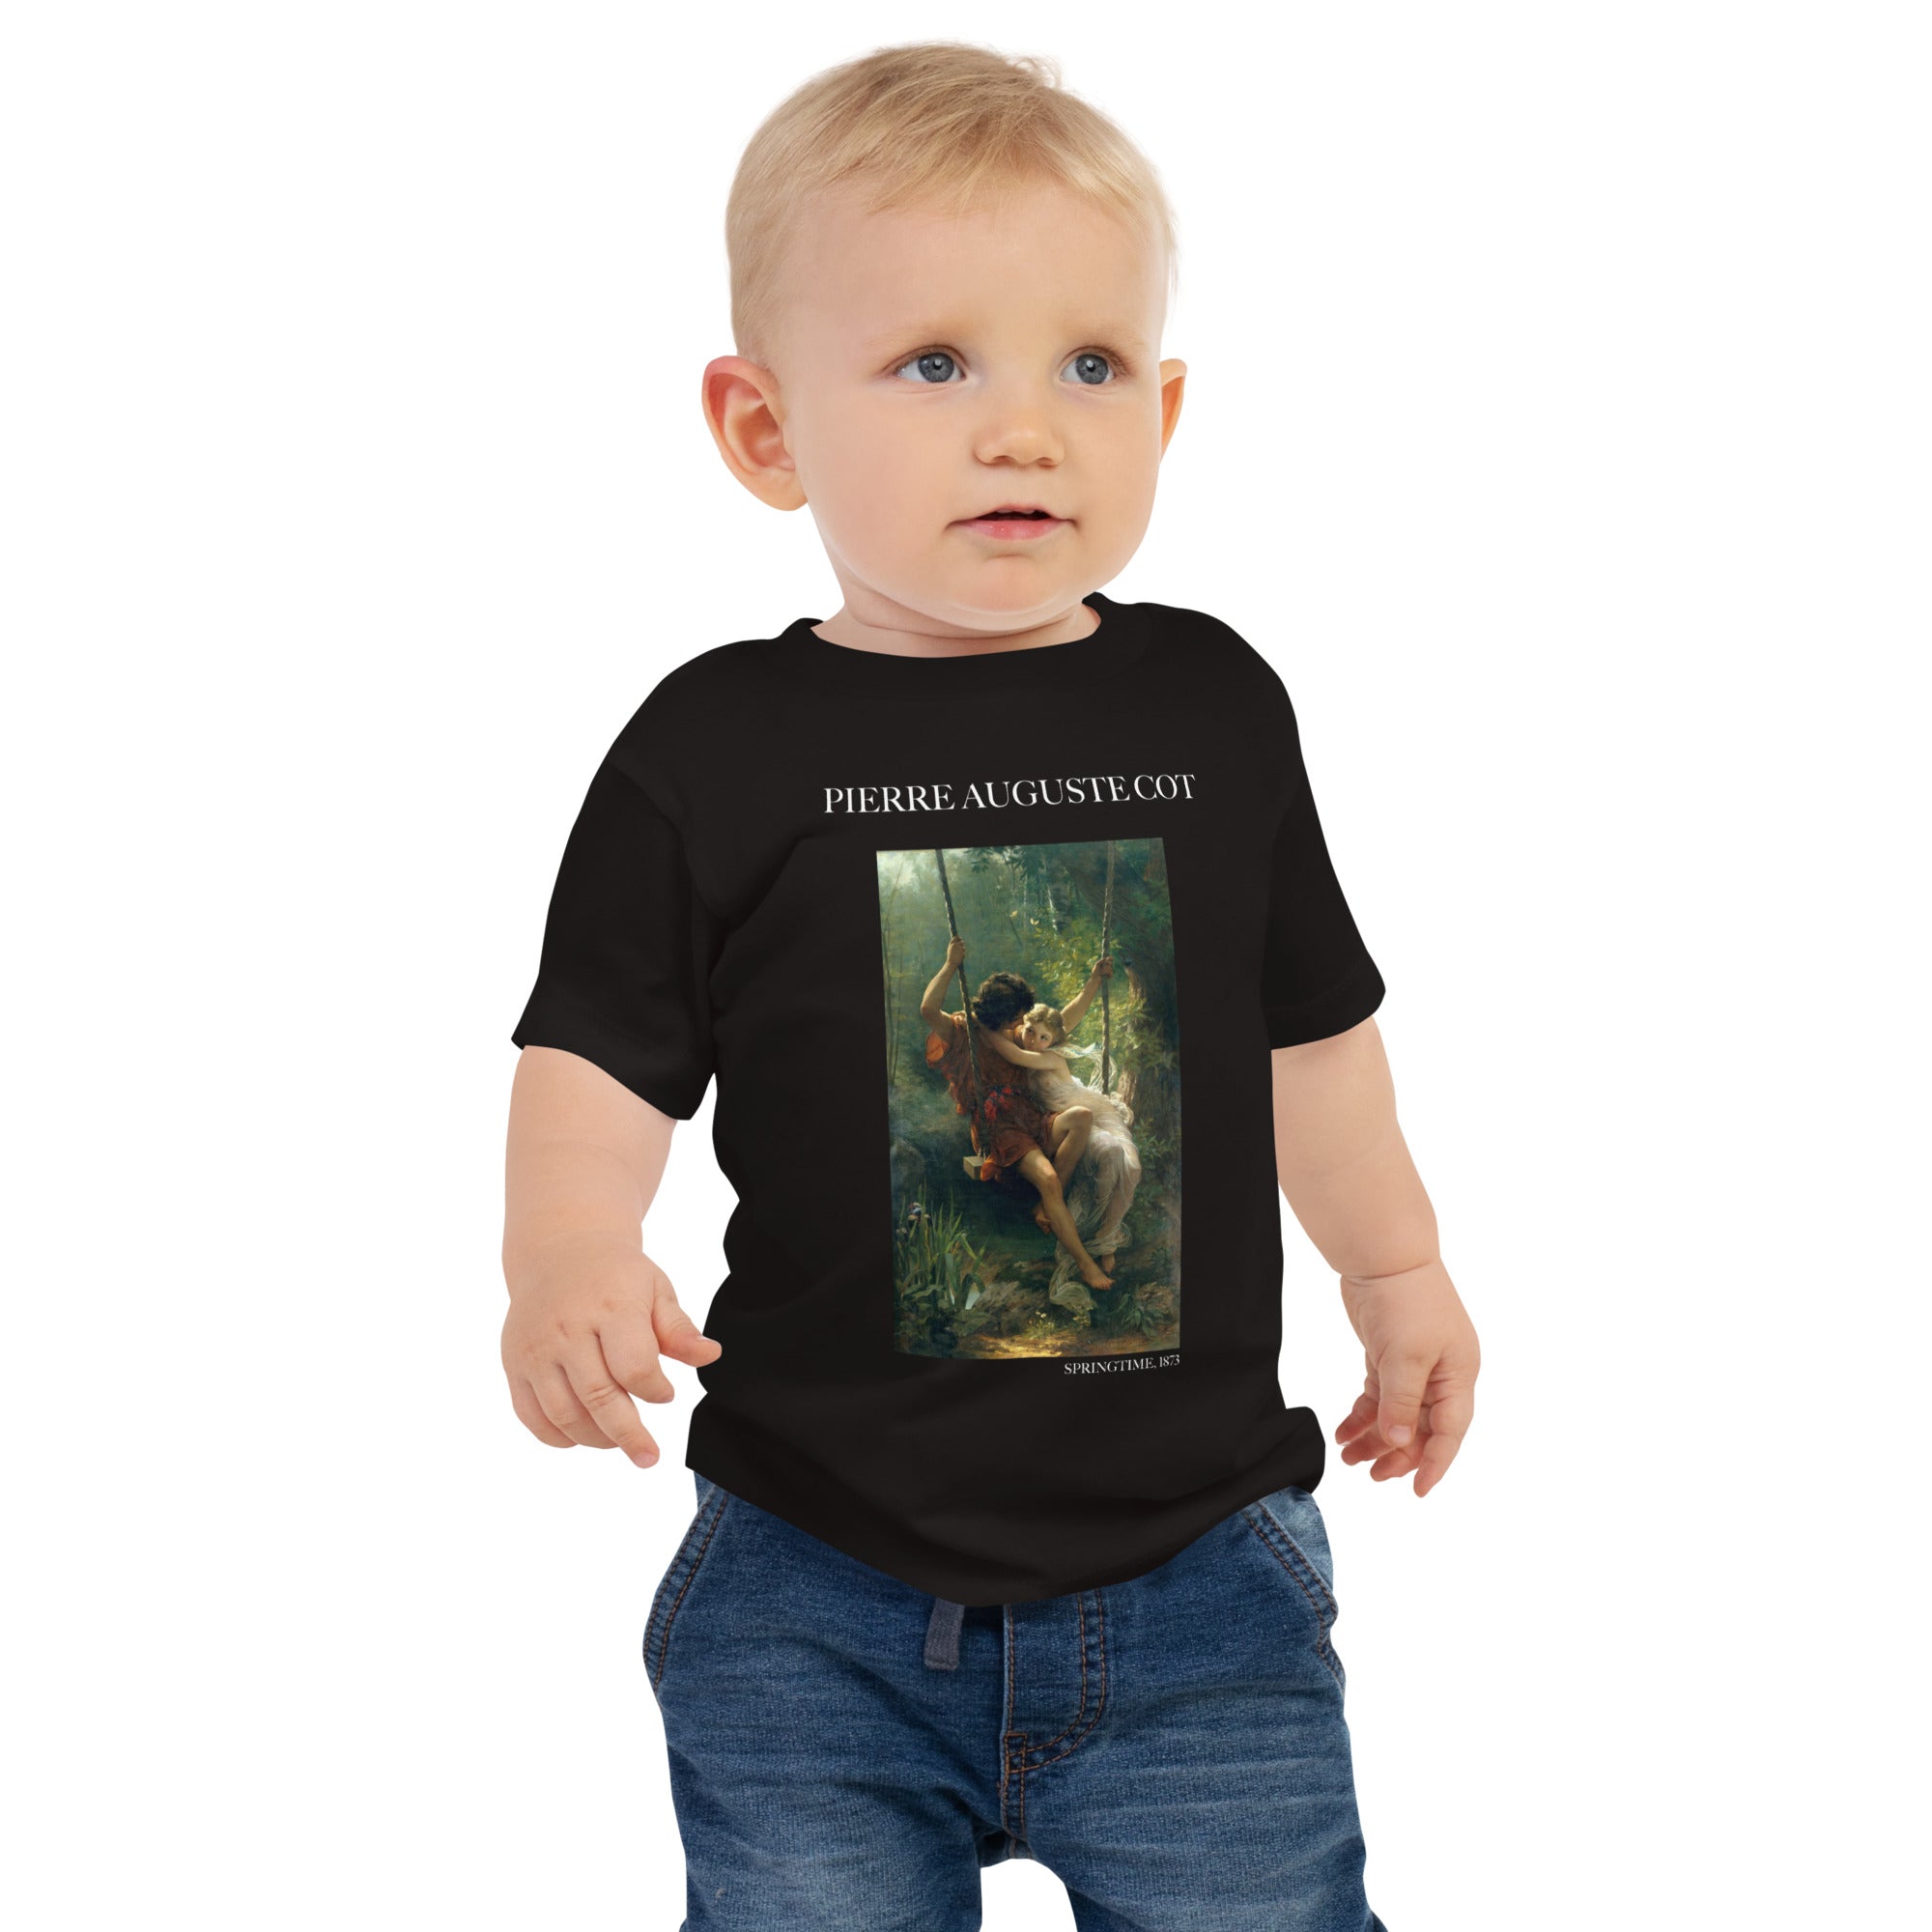 Pierre Auguste Cot 'Frühling' Berühmtes Gemälde Baby Basic T-Shirt | Premium Baby Art T-Shirt